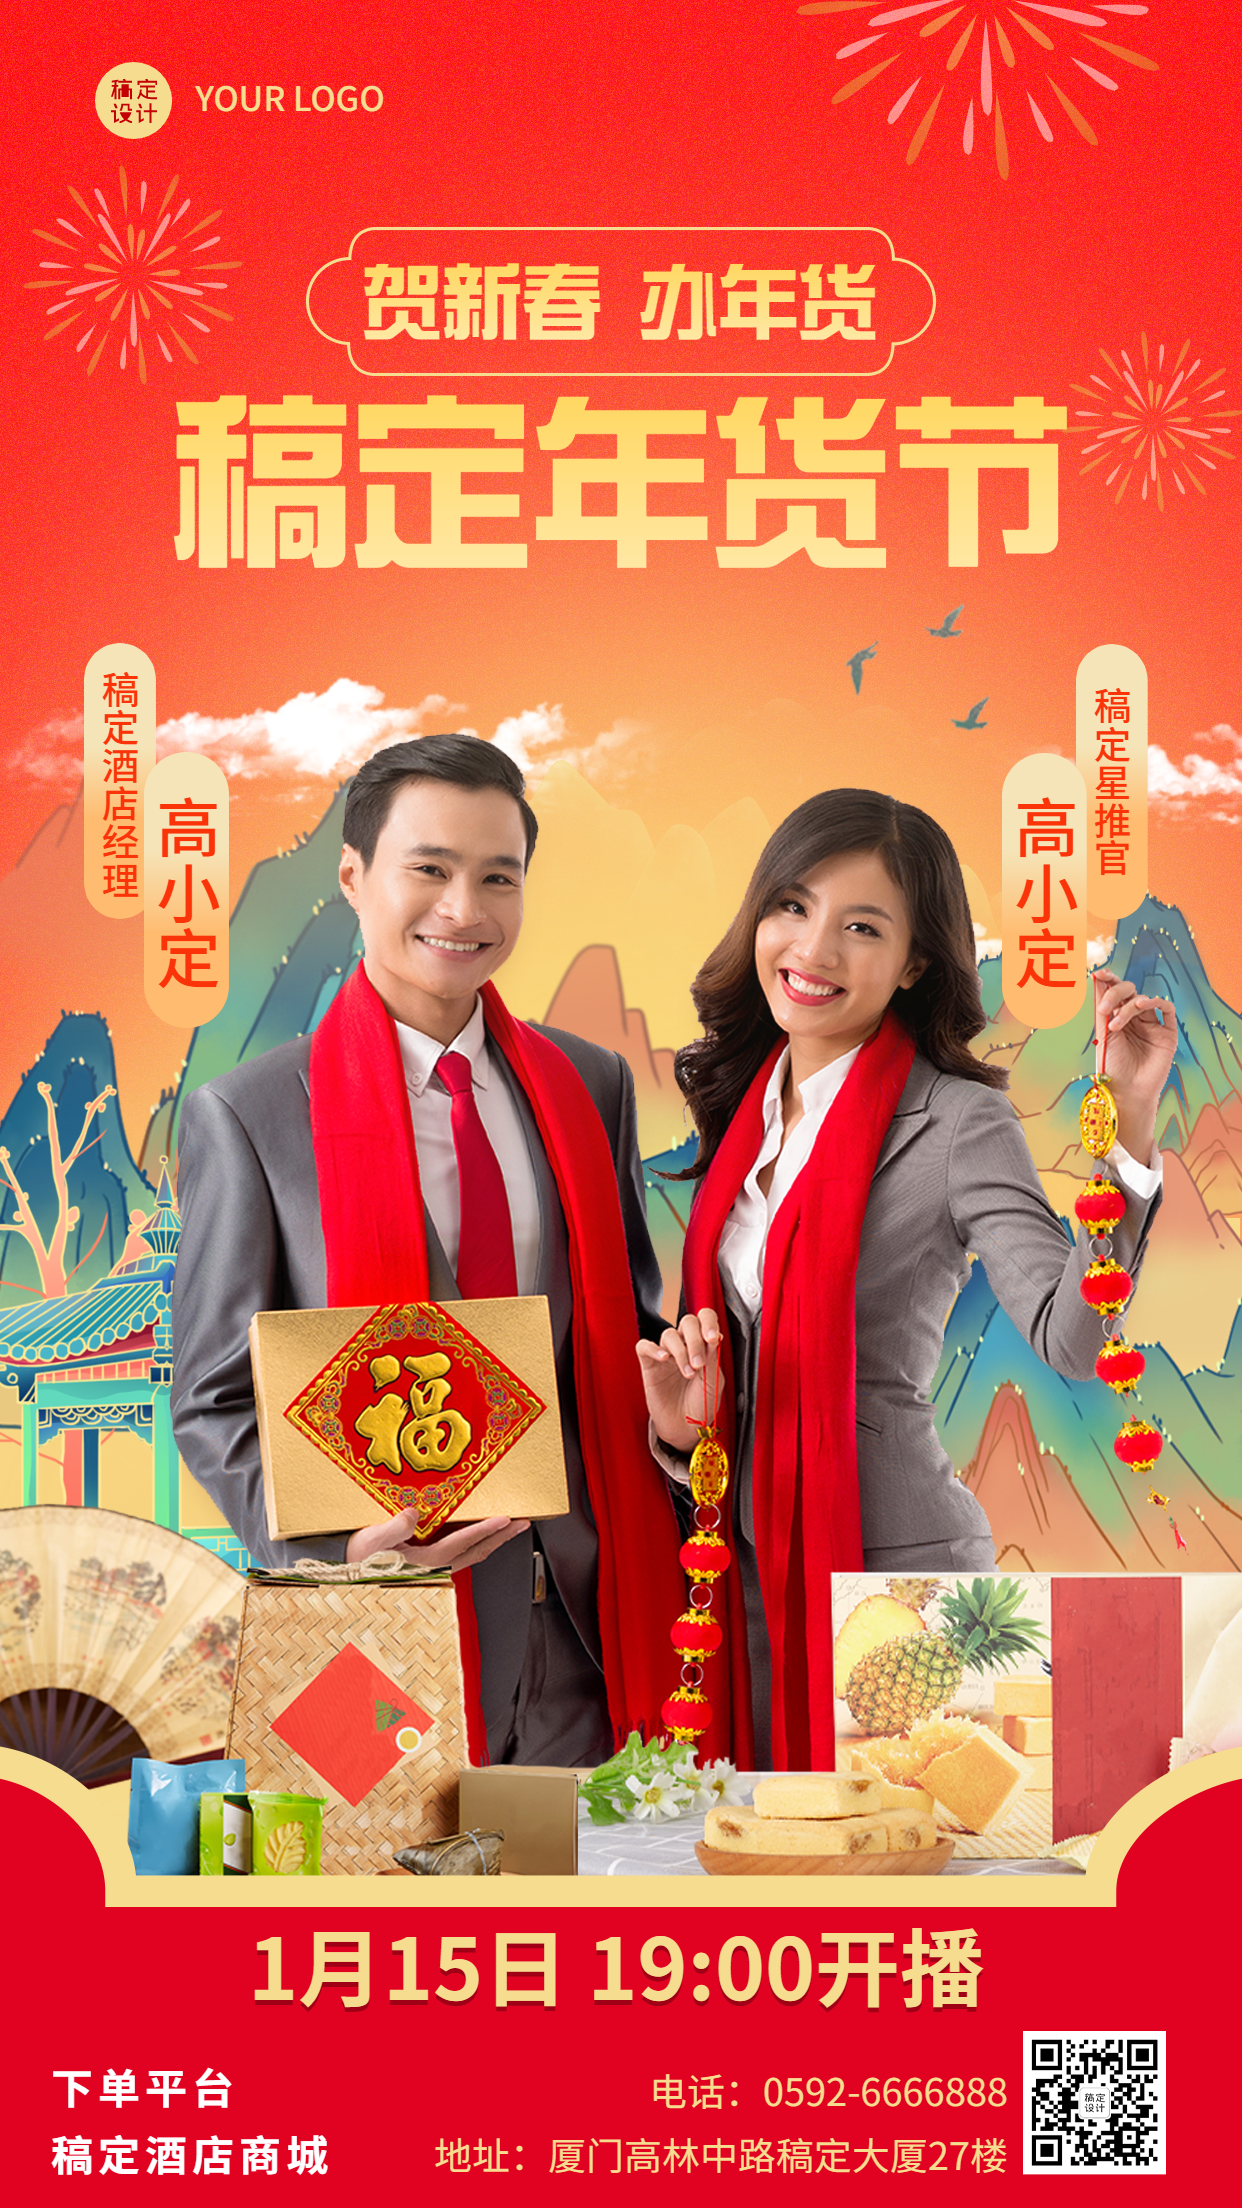 旅游出行年货节直播促销喜庆海报